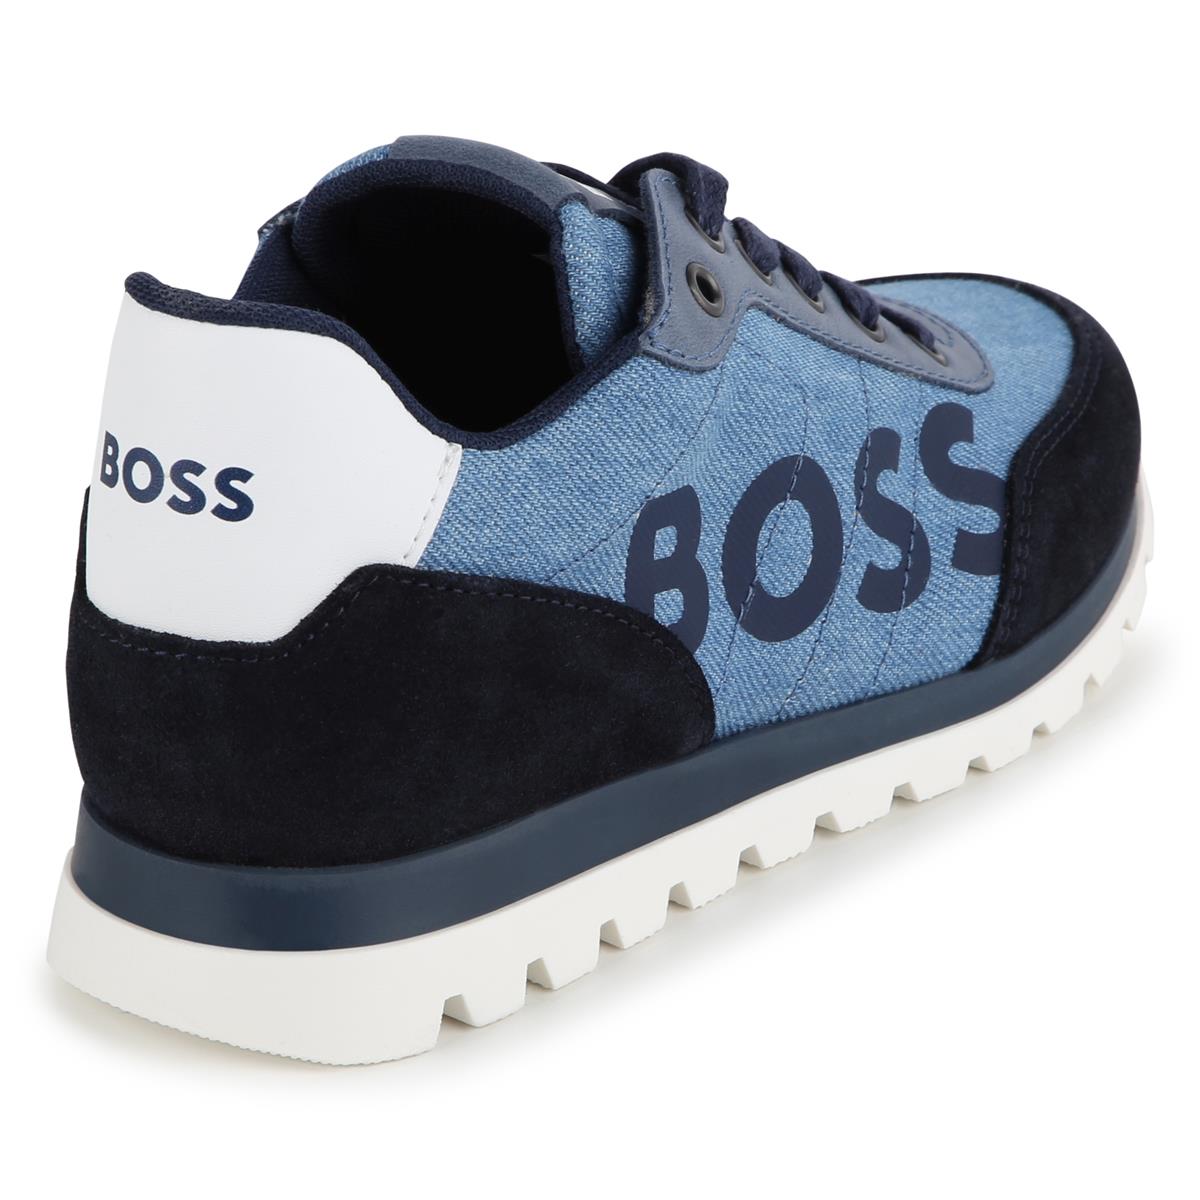 Boys Blue Shoes